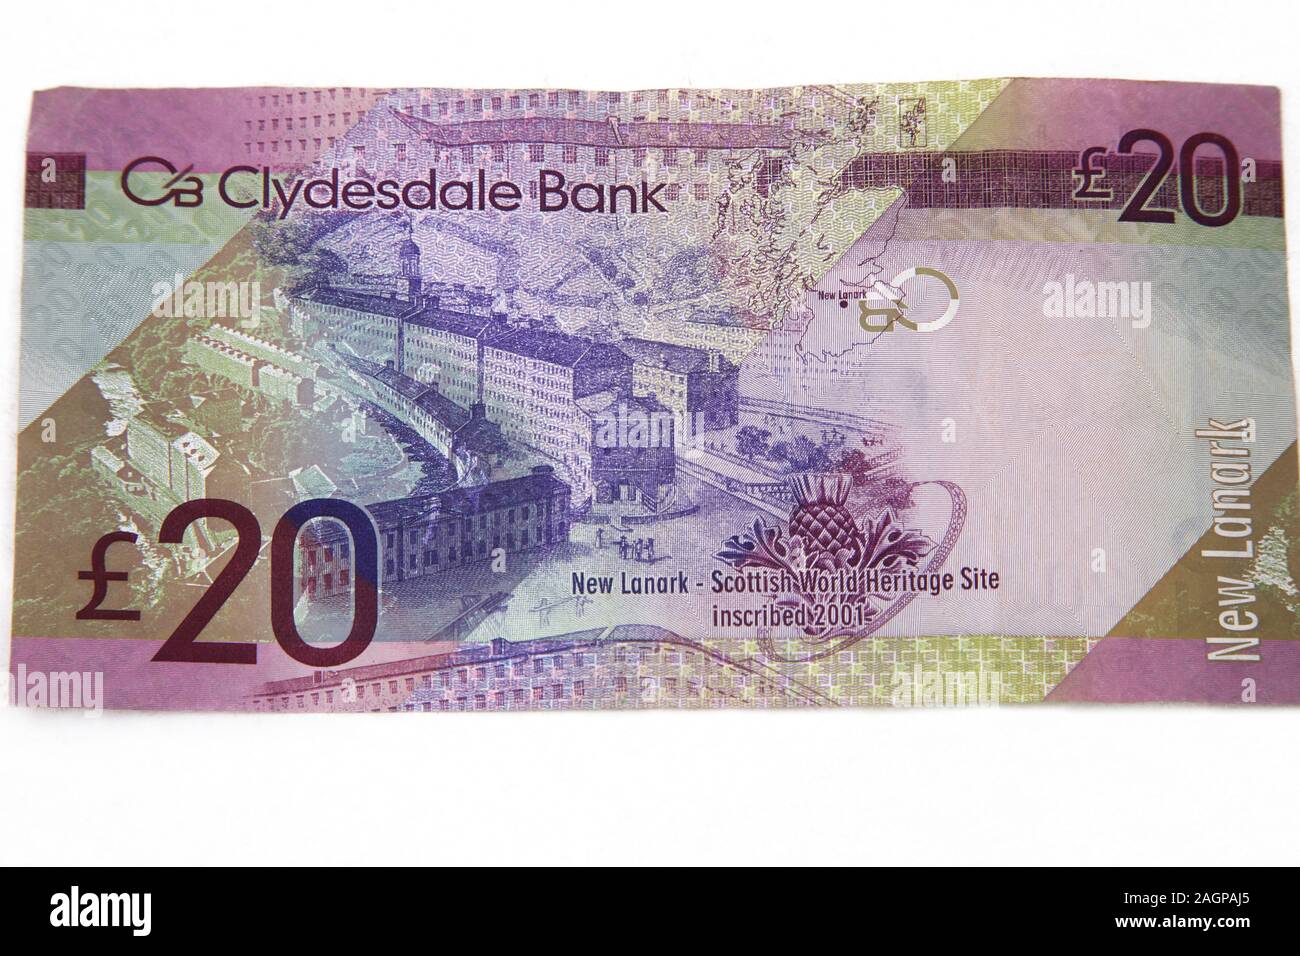 New Lanark en el reverso de Clydesdale Bank 20 libras nota Foto de stock